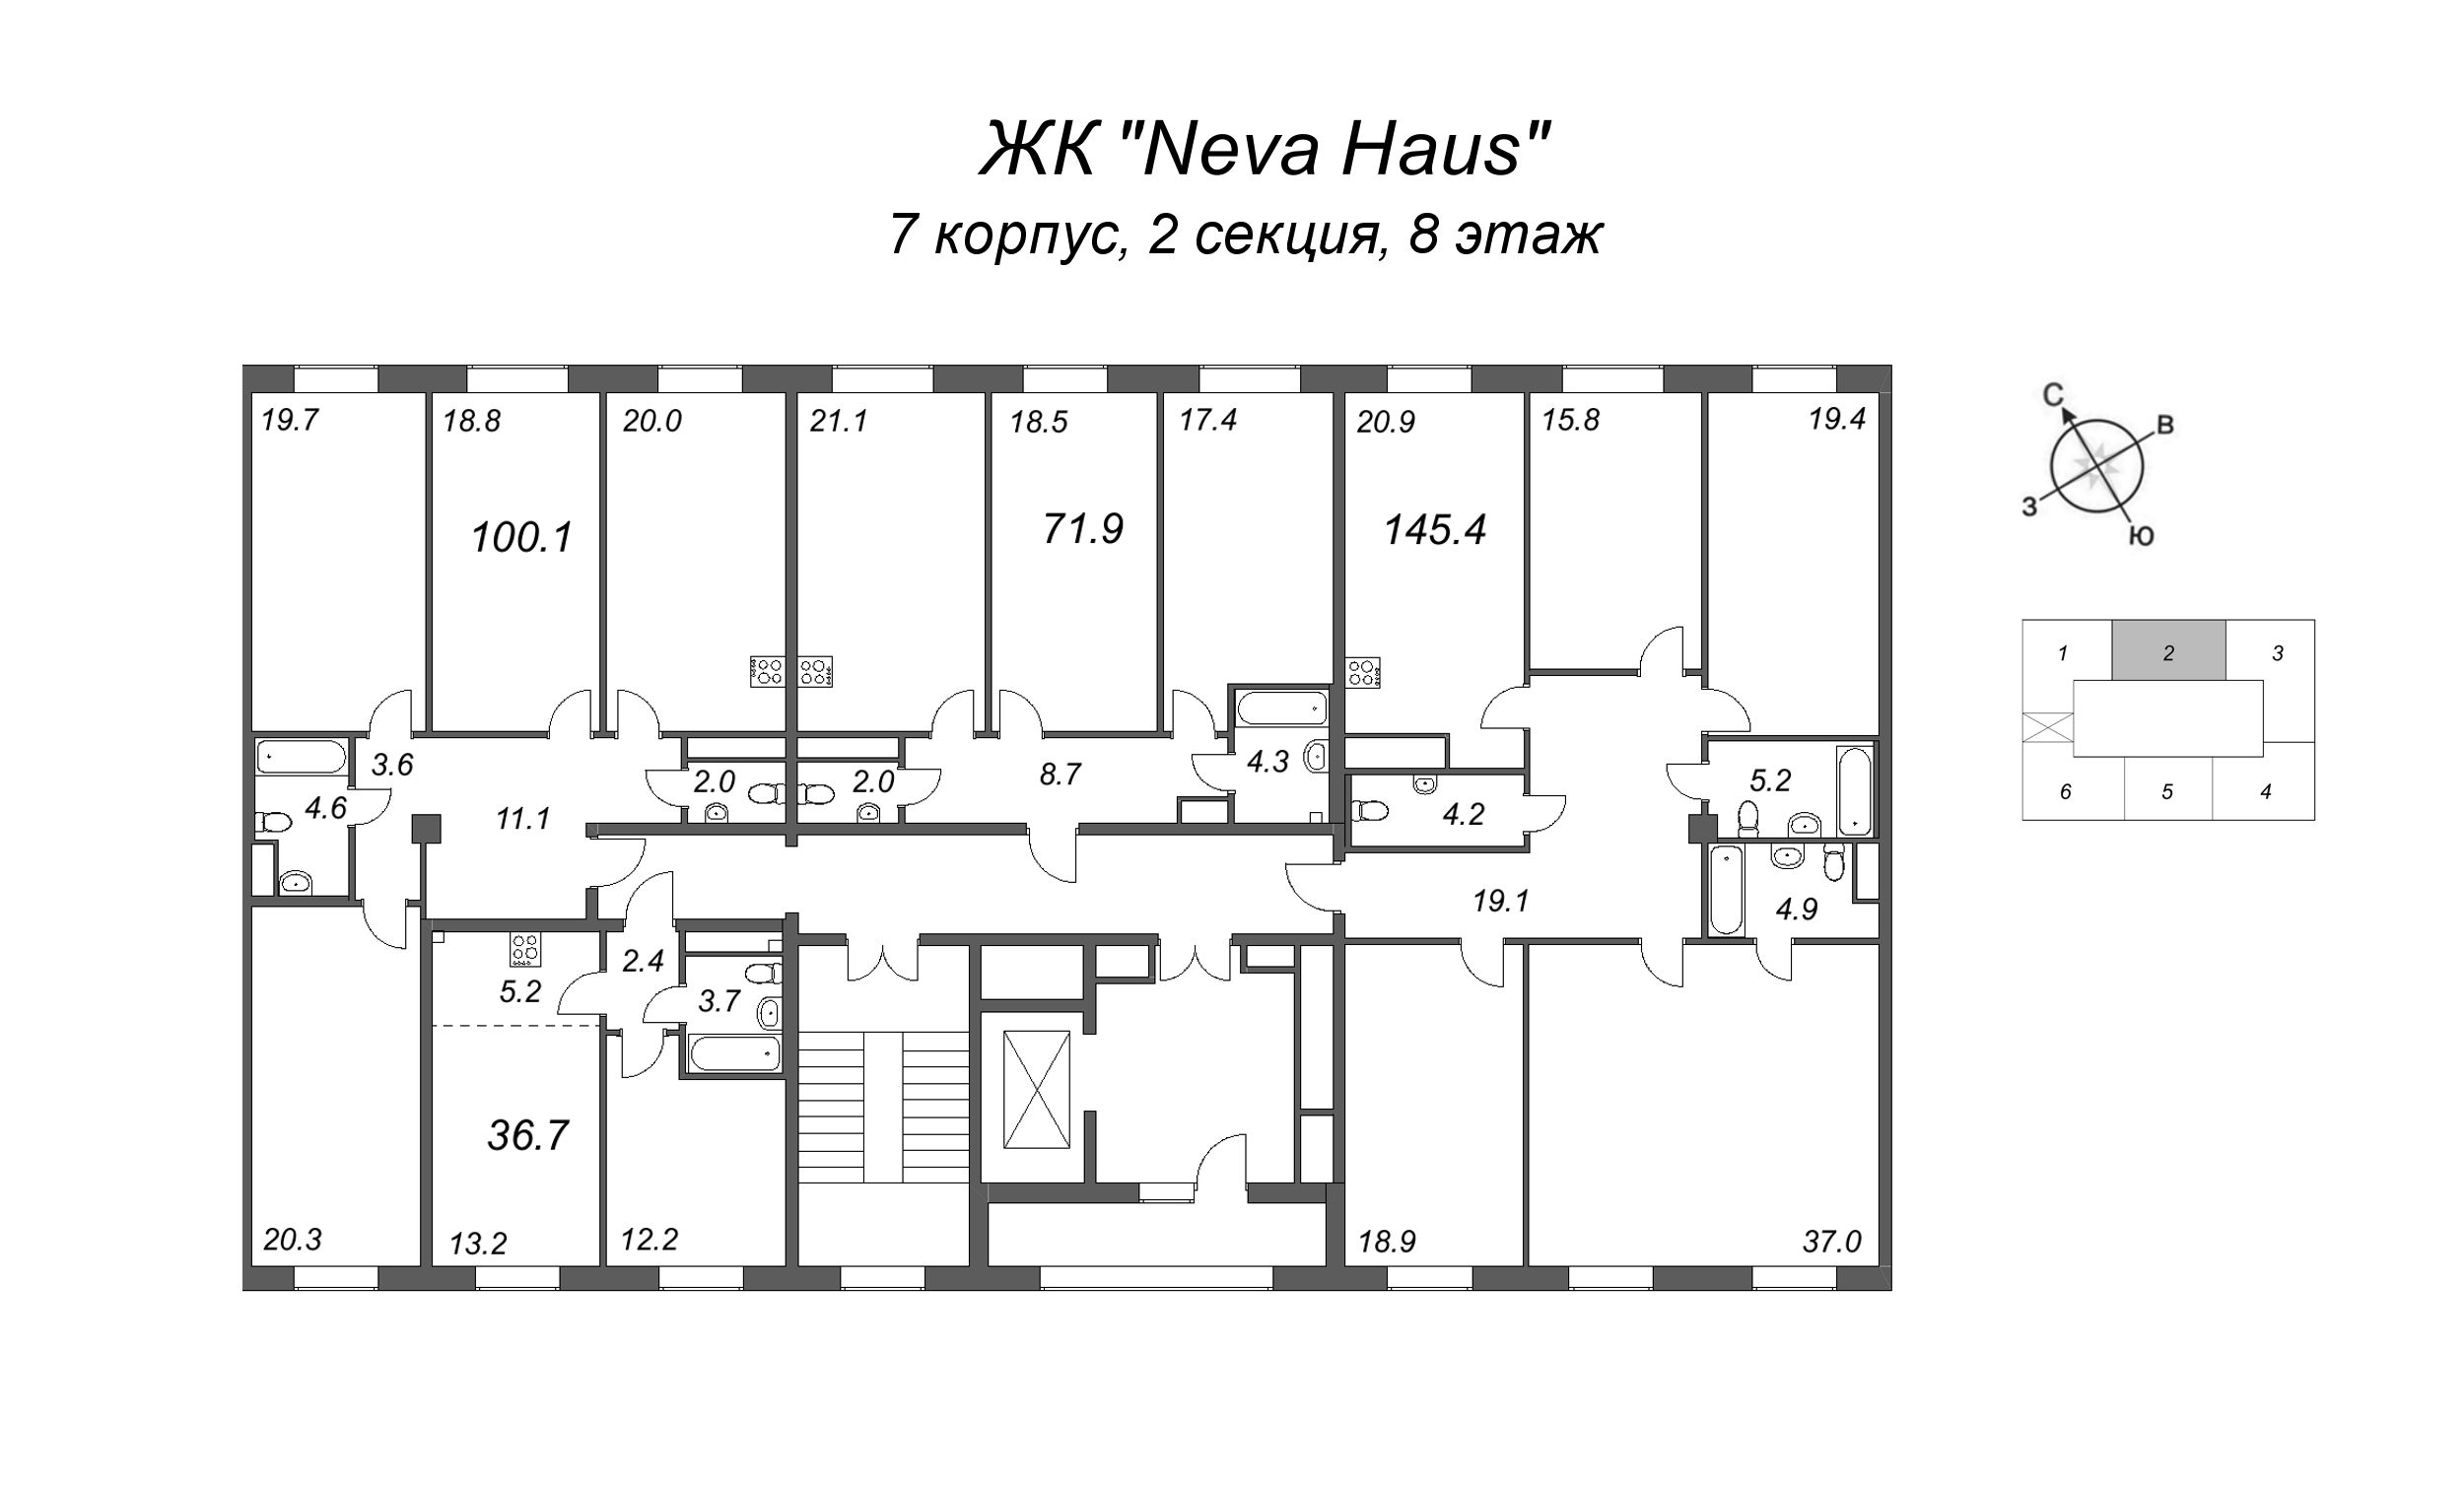 4-комнатная (Евро) квартира, 100.3 м² в ЖК "Neva Haus" - планировка этажа